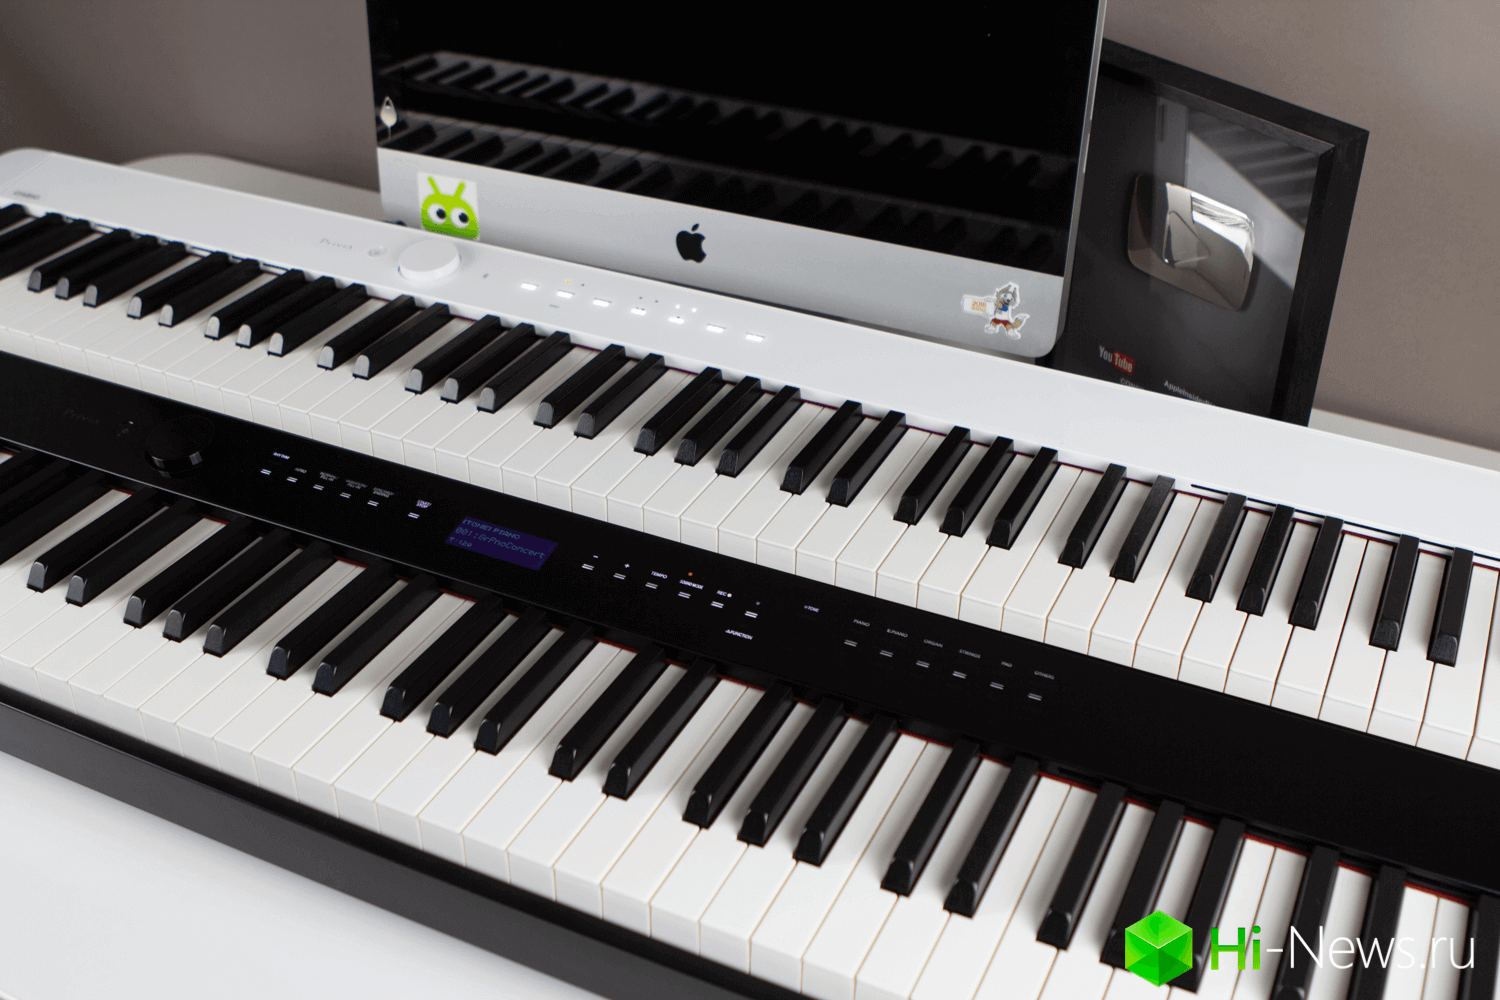 Jogamos na verdade, compacto e технологичном piano. Tem ainda Bluetooth